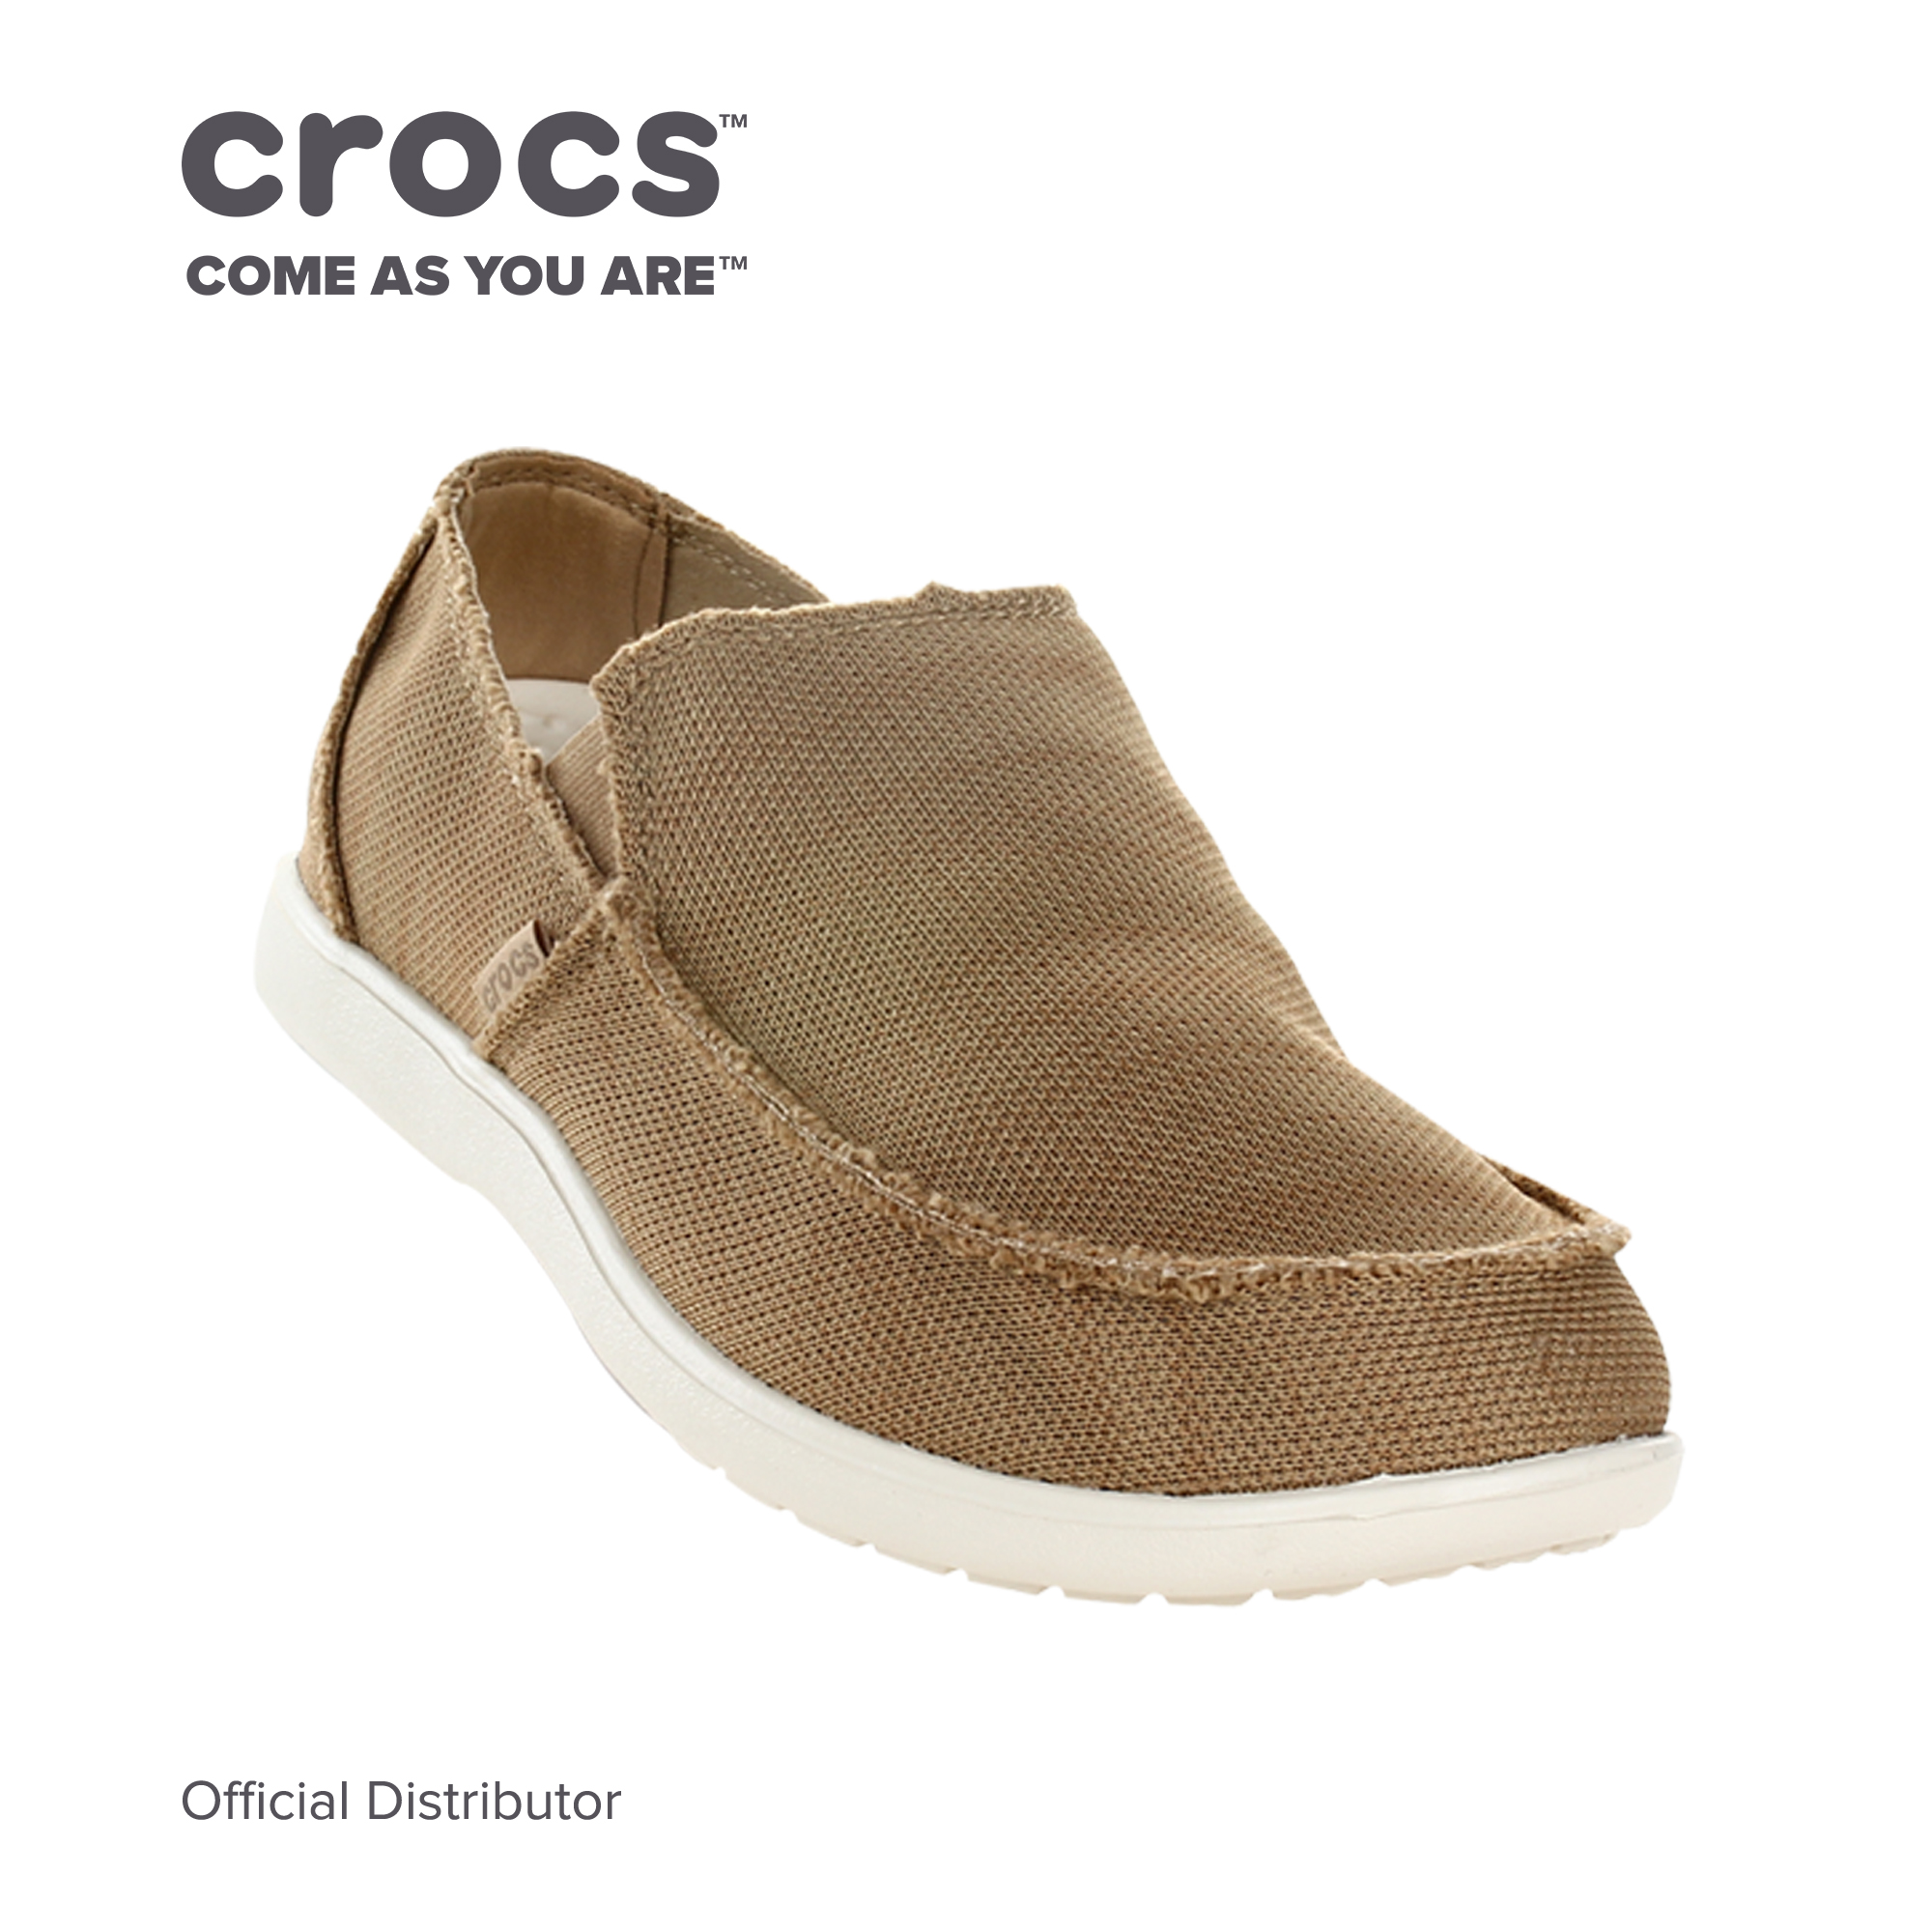 crocs fabric shoes